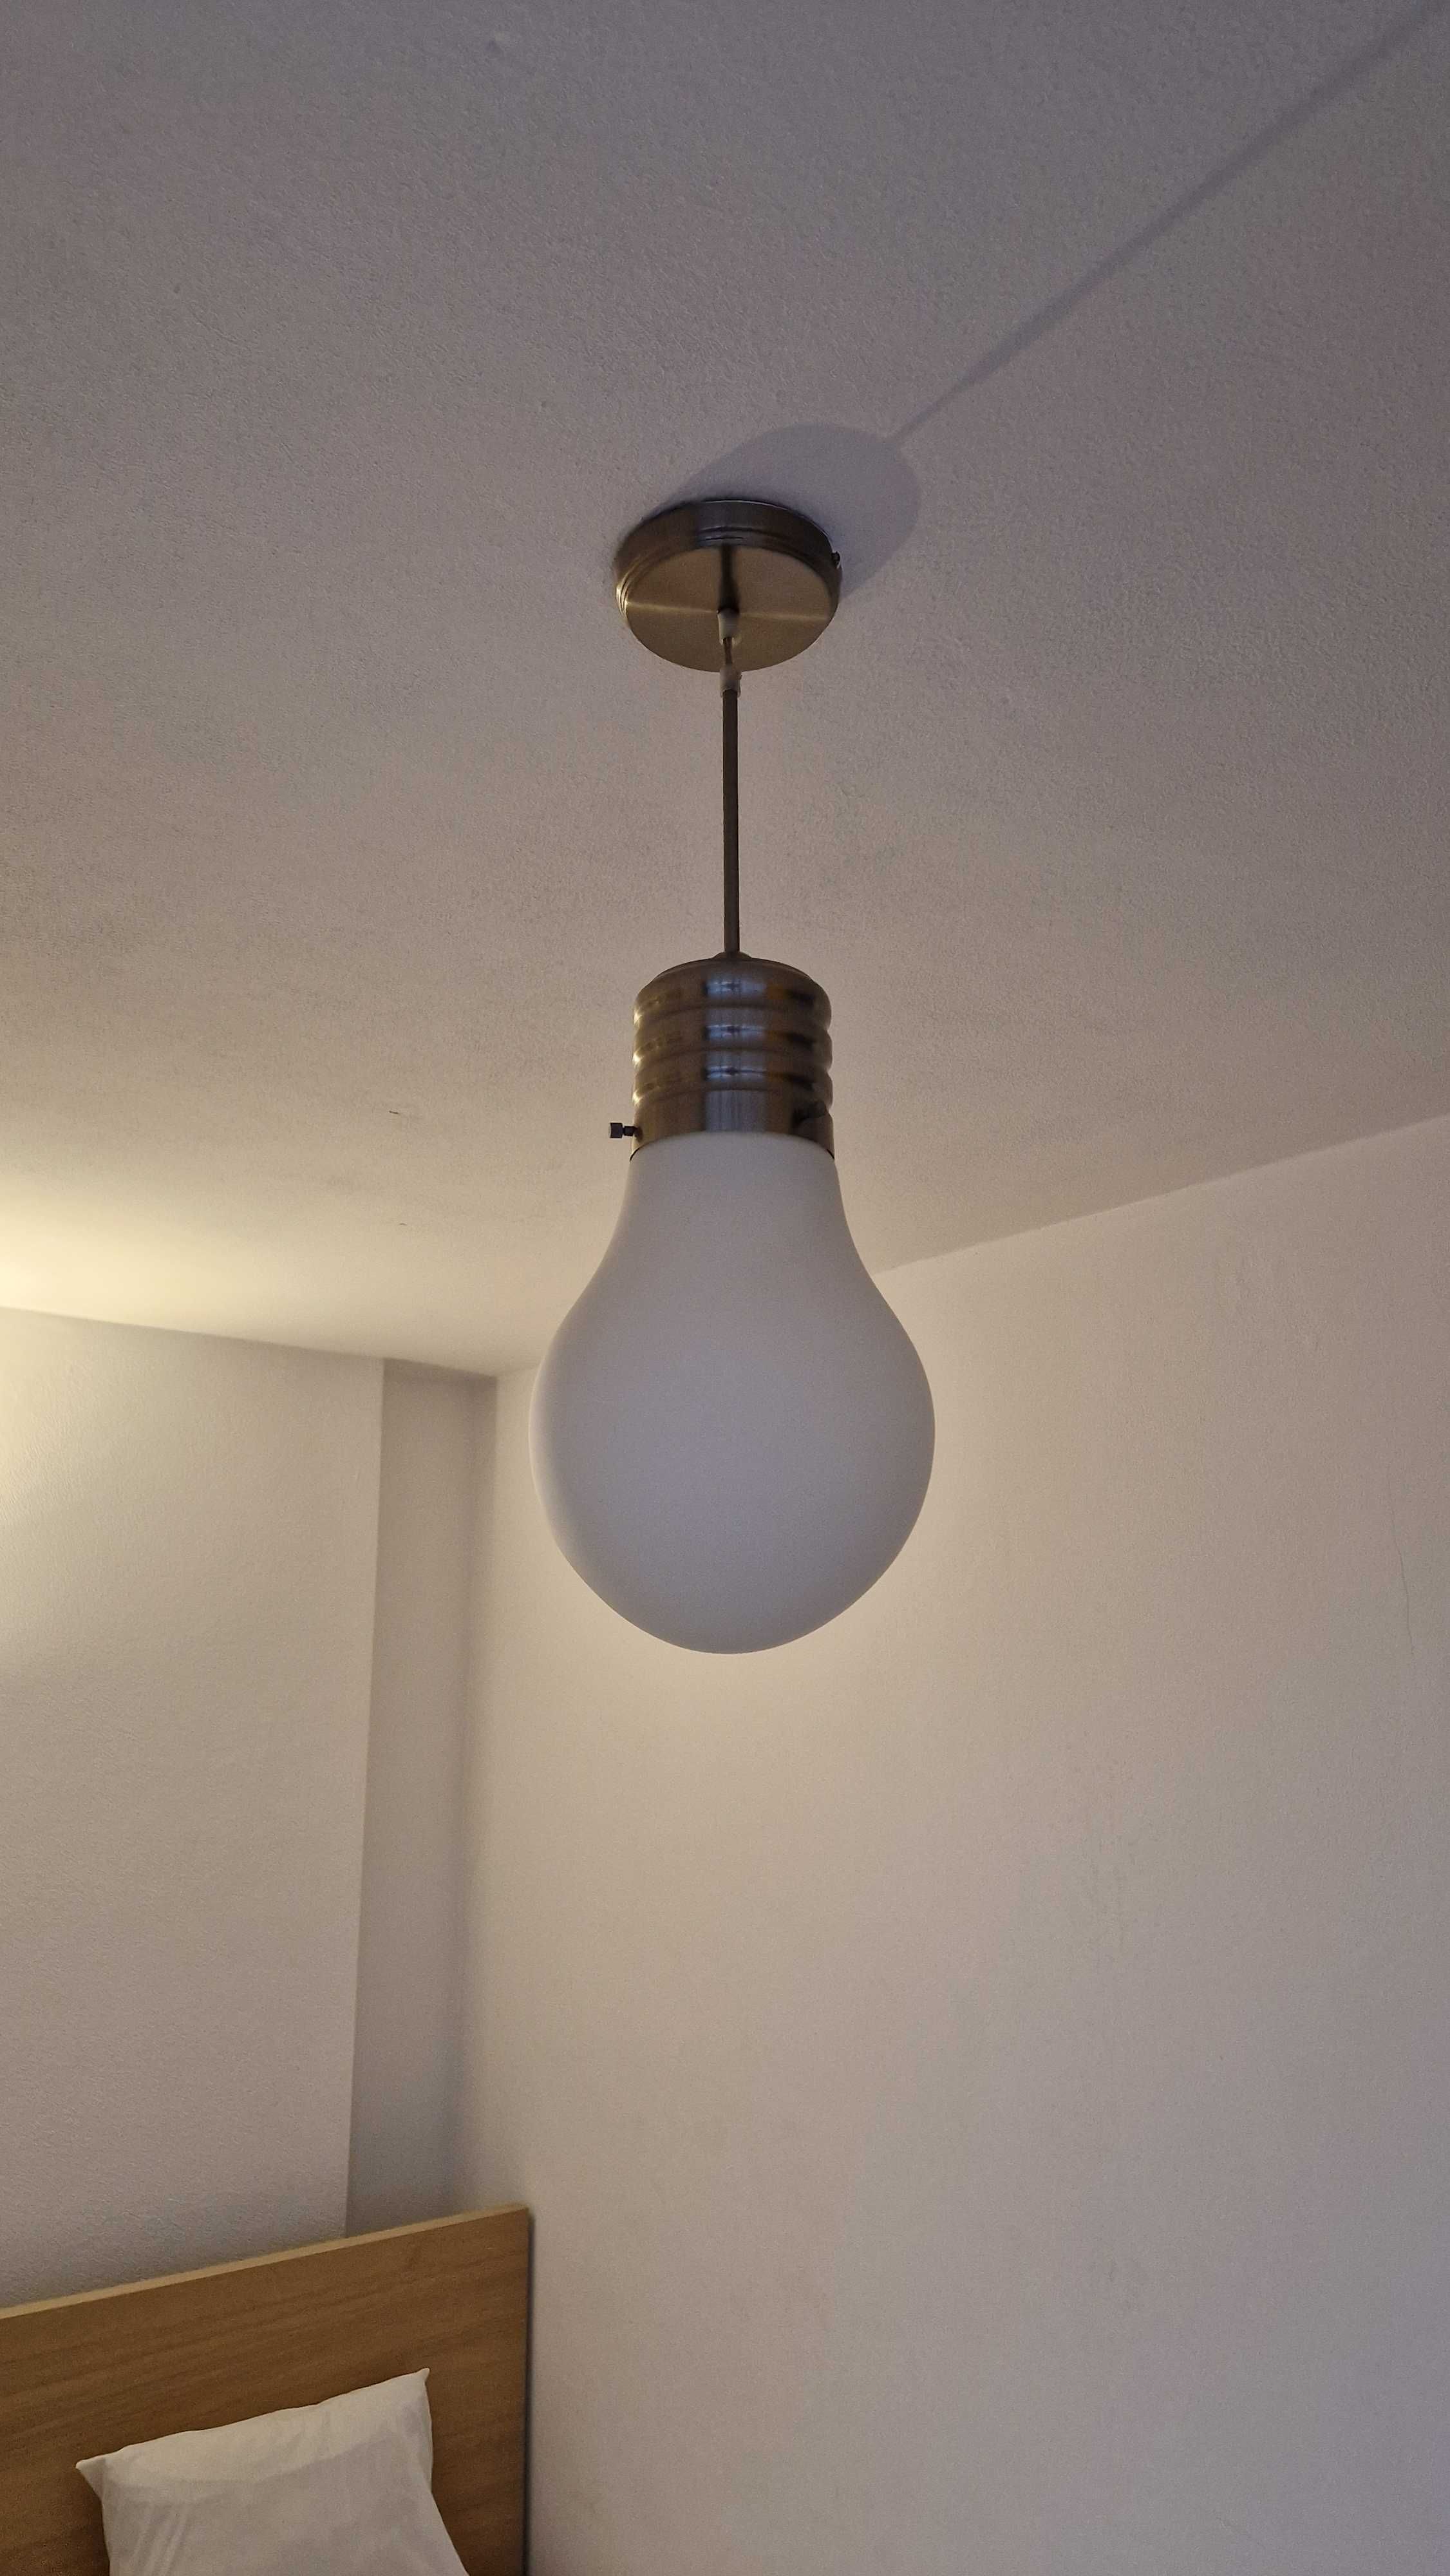 lampa typu ŻAROWKA, ok 60cm